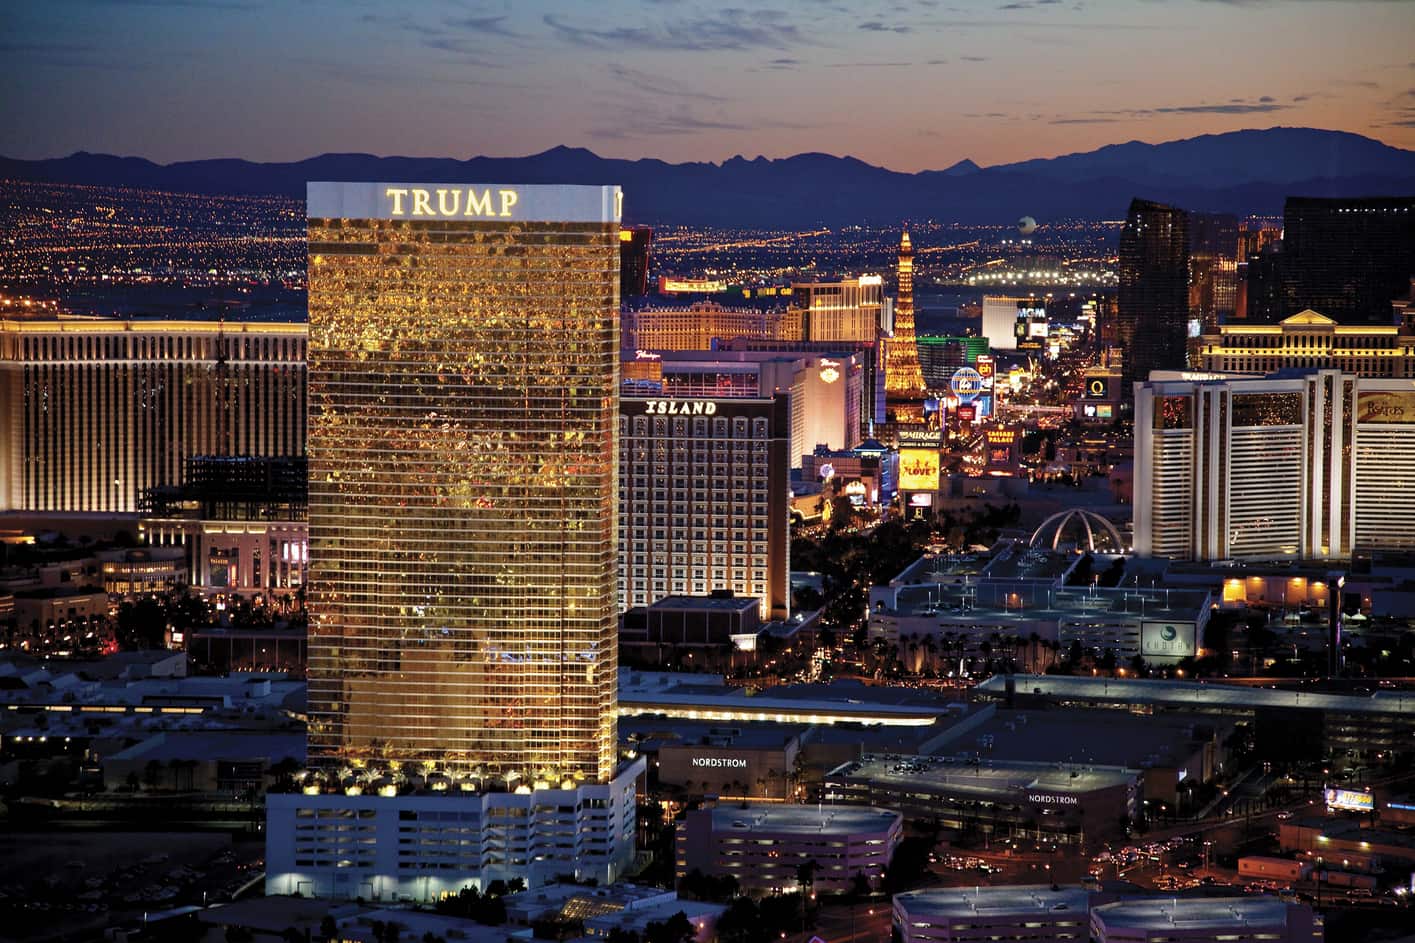 Trump International Hotel, qué hoteles de Las Vegas tienen parking gratis